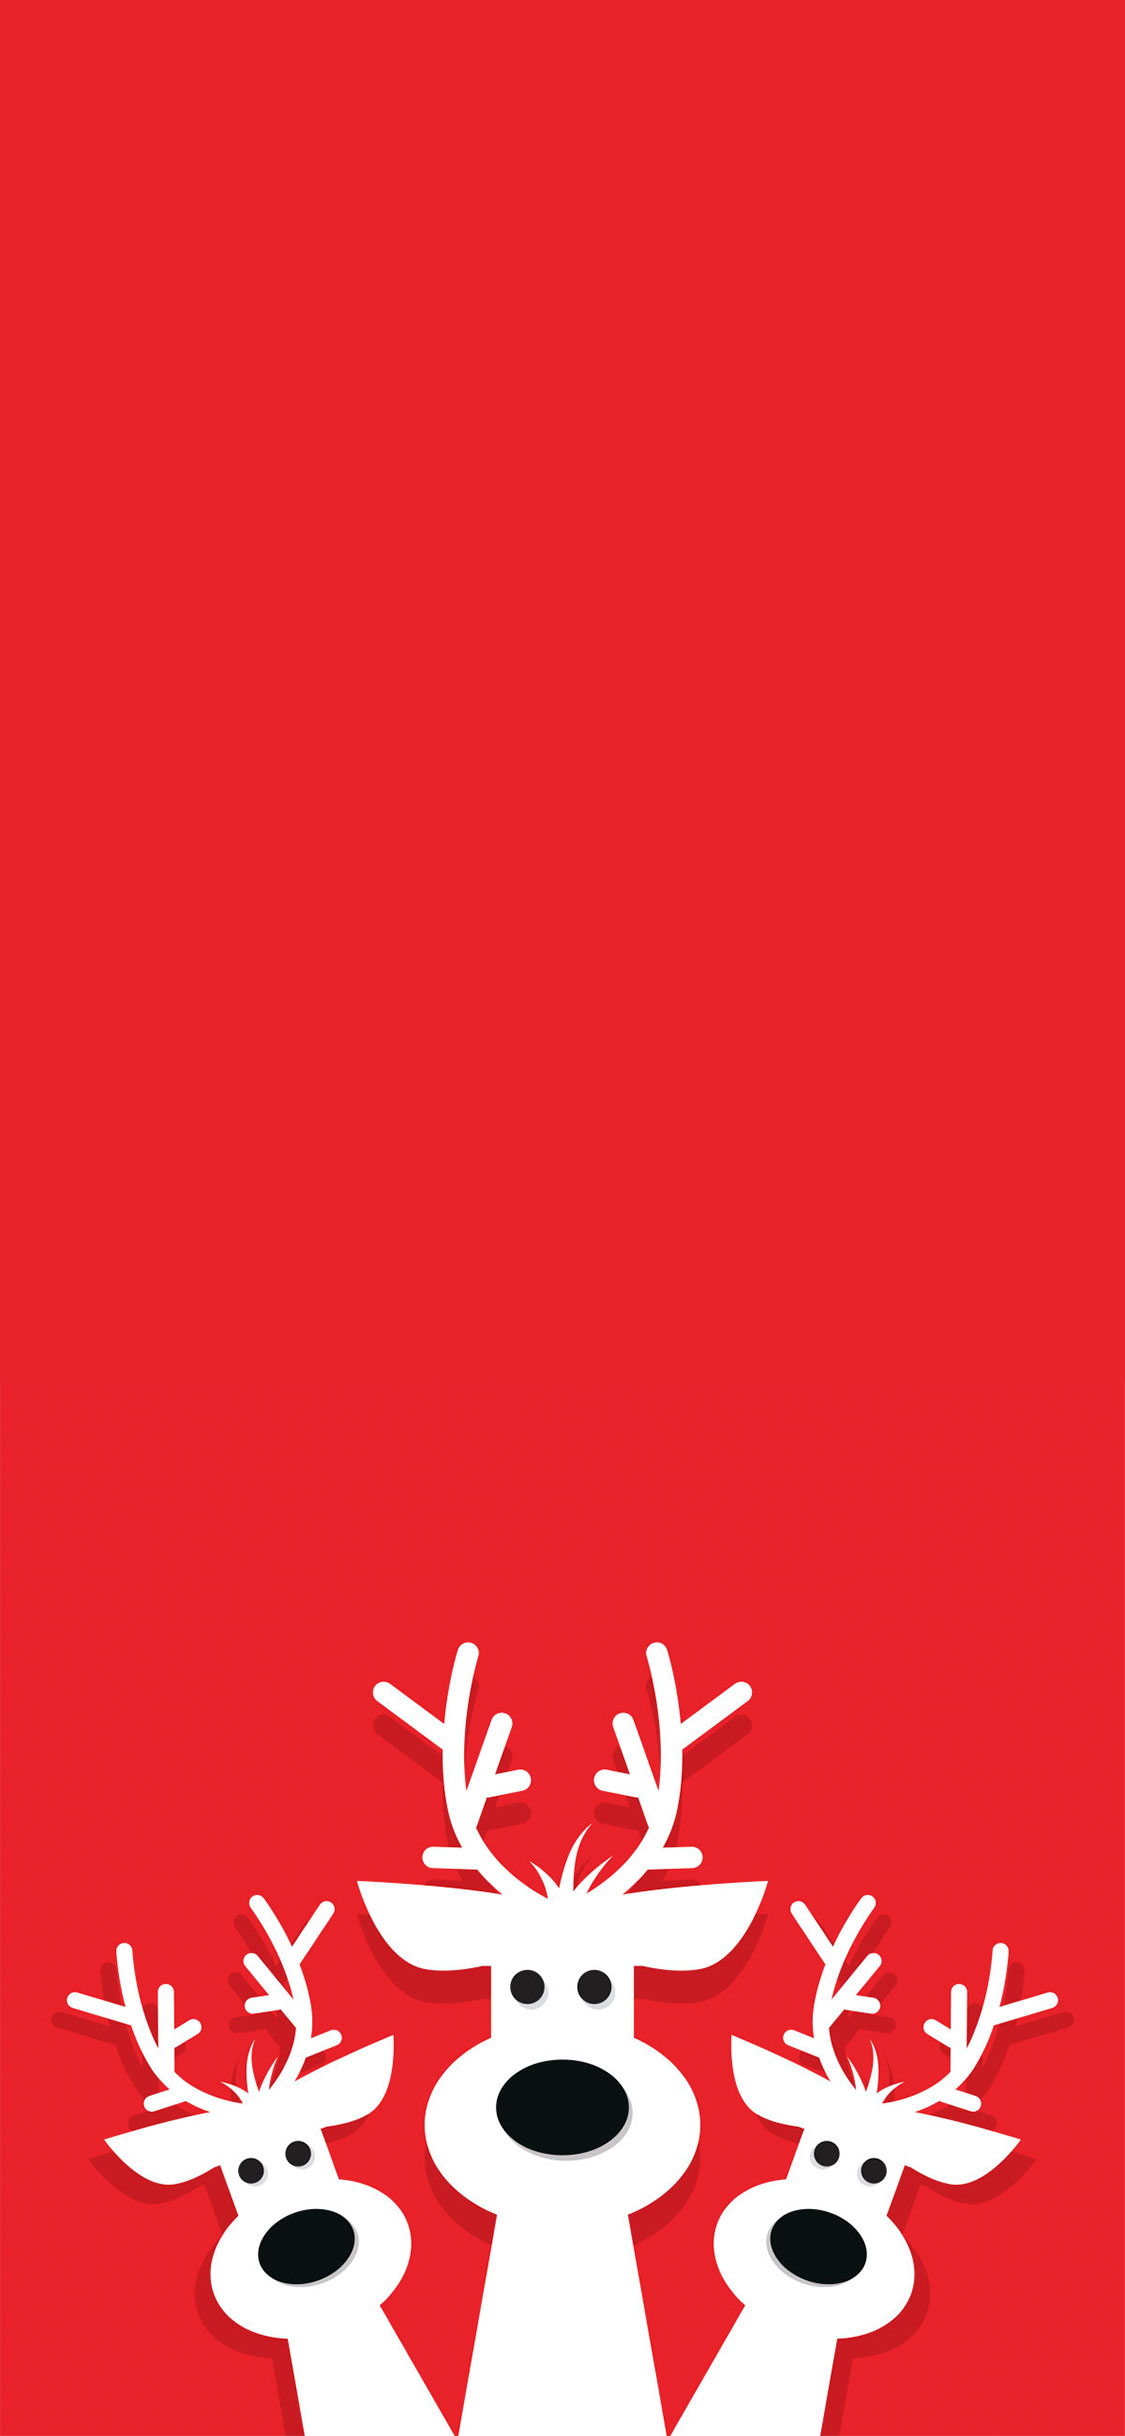 Red Cartoon Reindeers